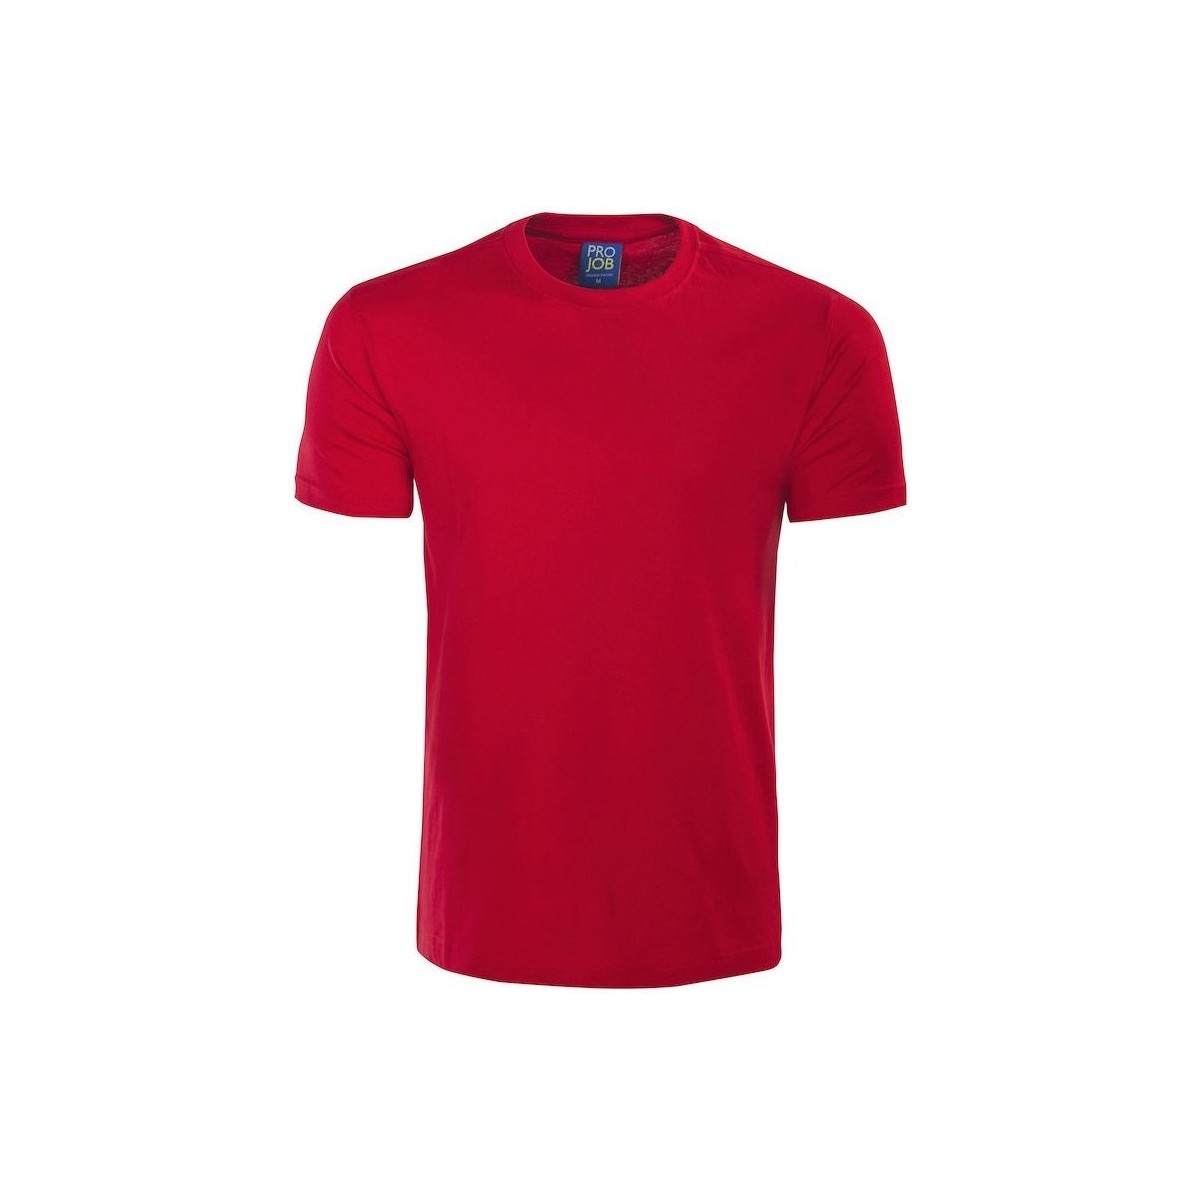 Vêtements Homme T-shirts manches longues Projob UB294 Rouge